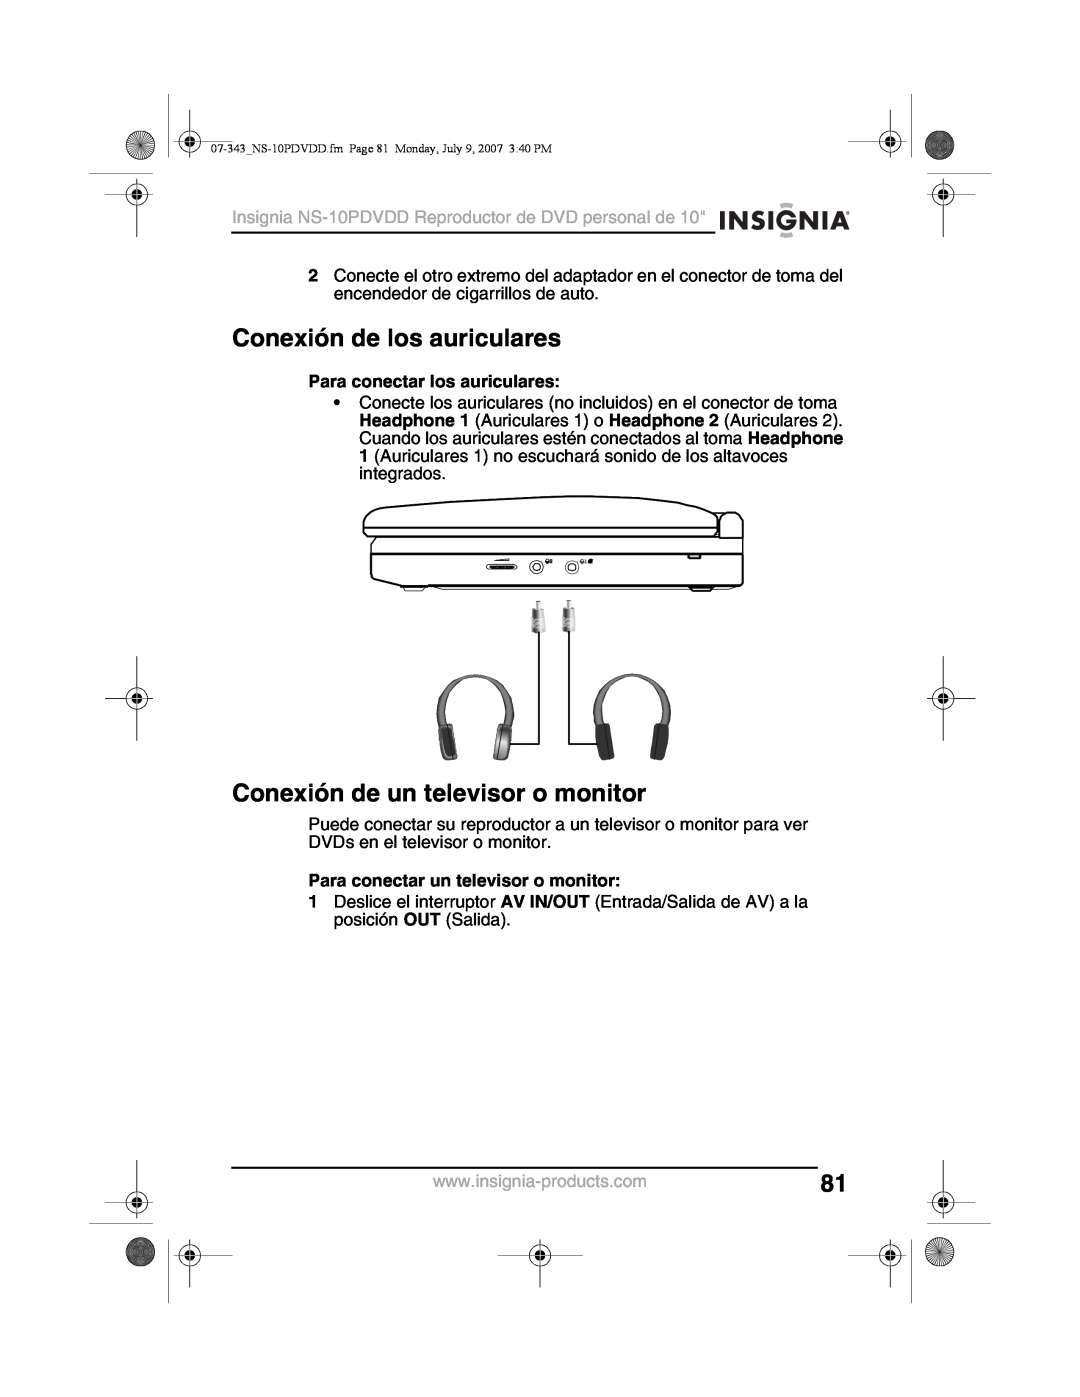 Insignia NS-10PDVDD manual Conexión de los auriculares, Conexión de un televisor o monitor, Para conectar los auriculares 